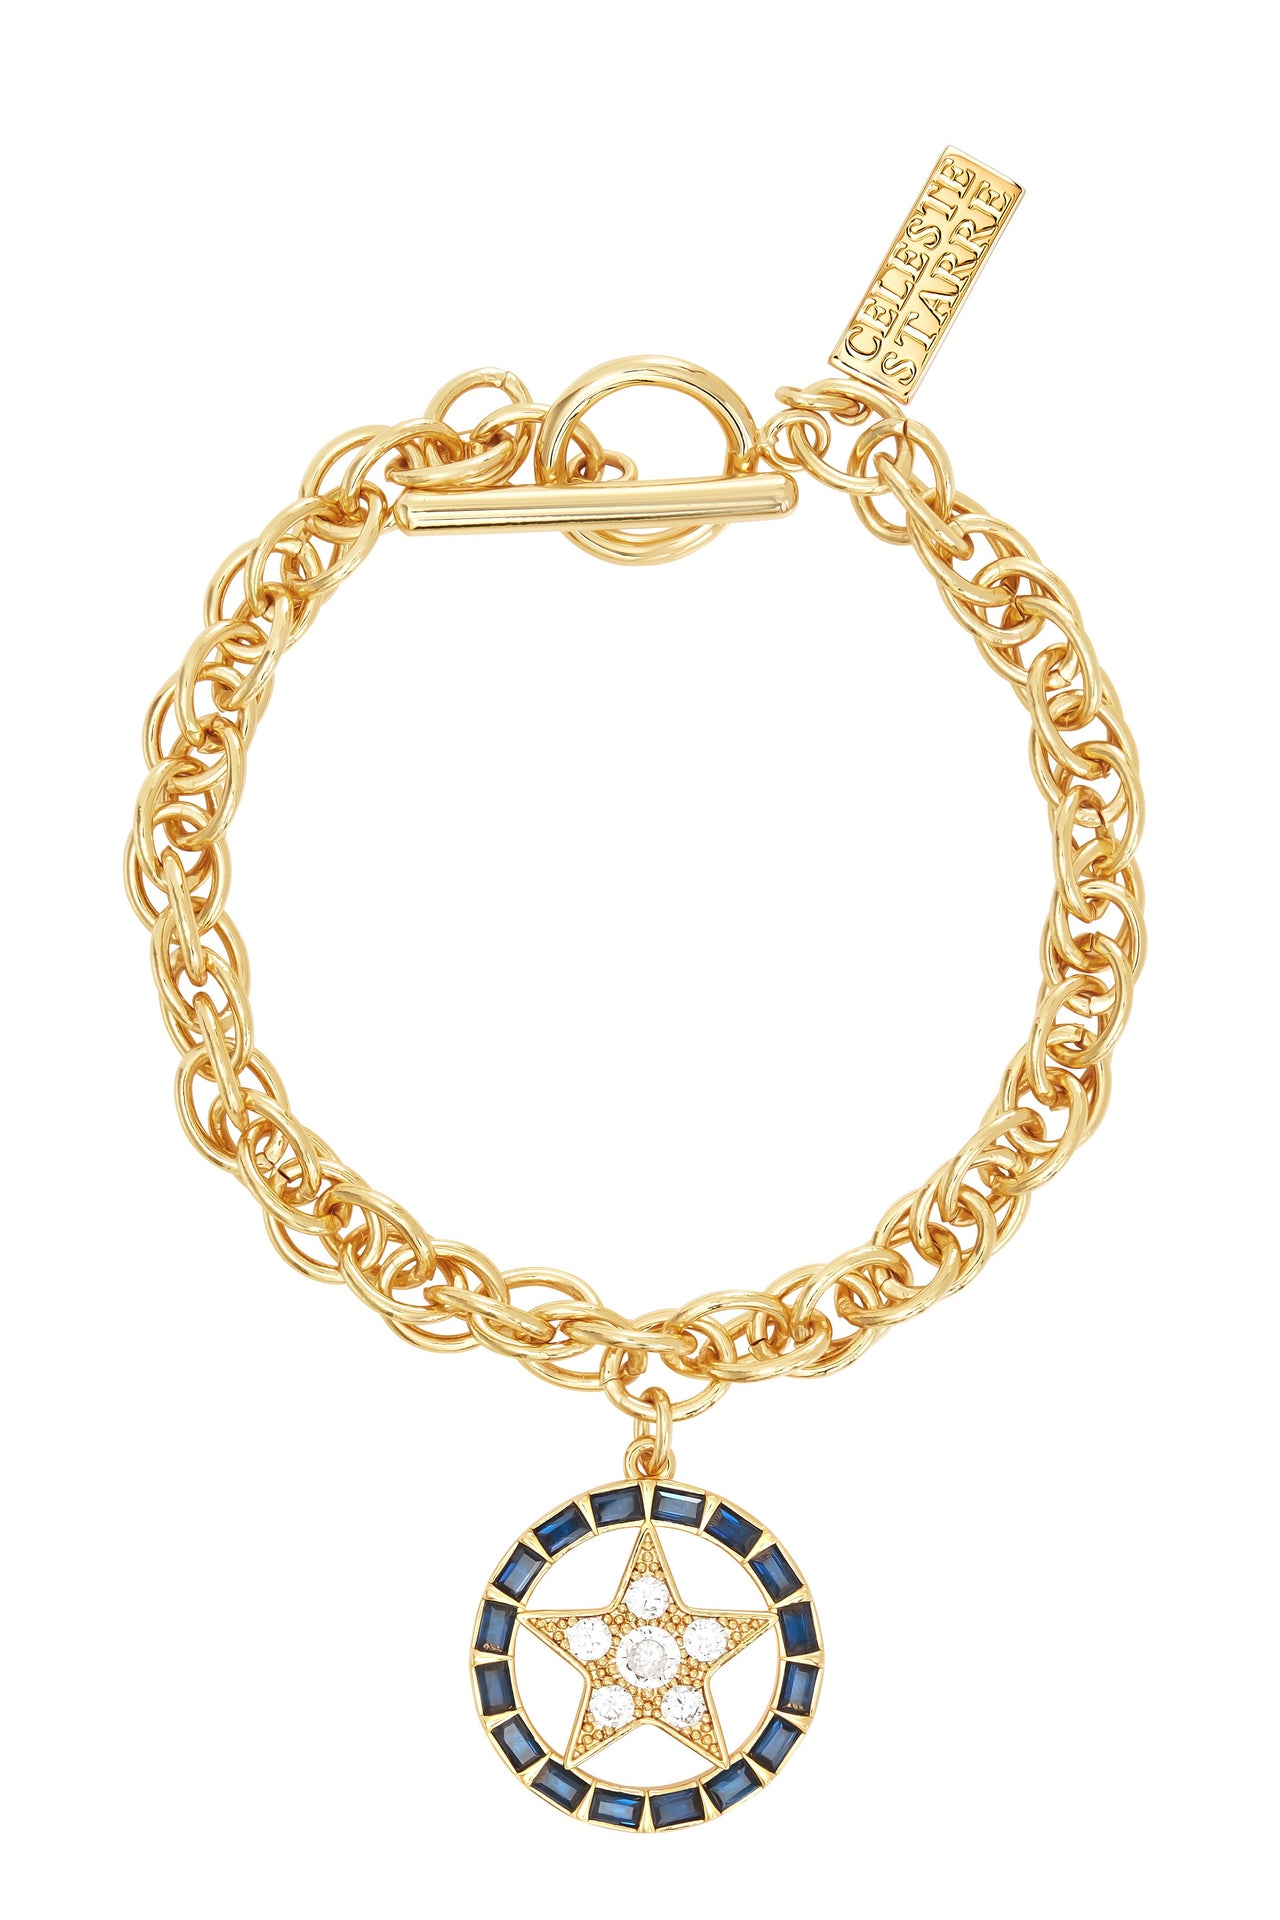 The North Star Bracelet (blue)-Bracelet-Celeste Starre-Debs Boutique